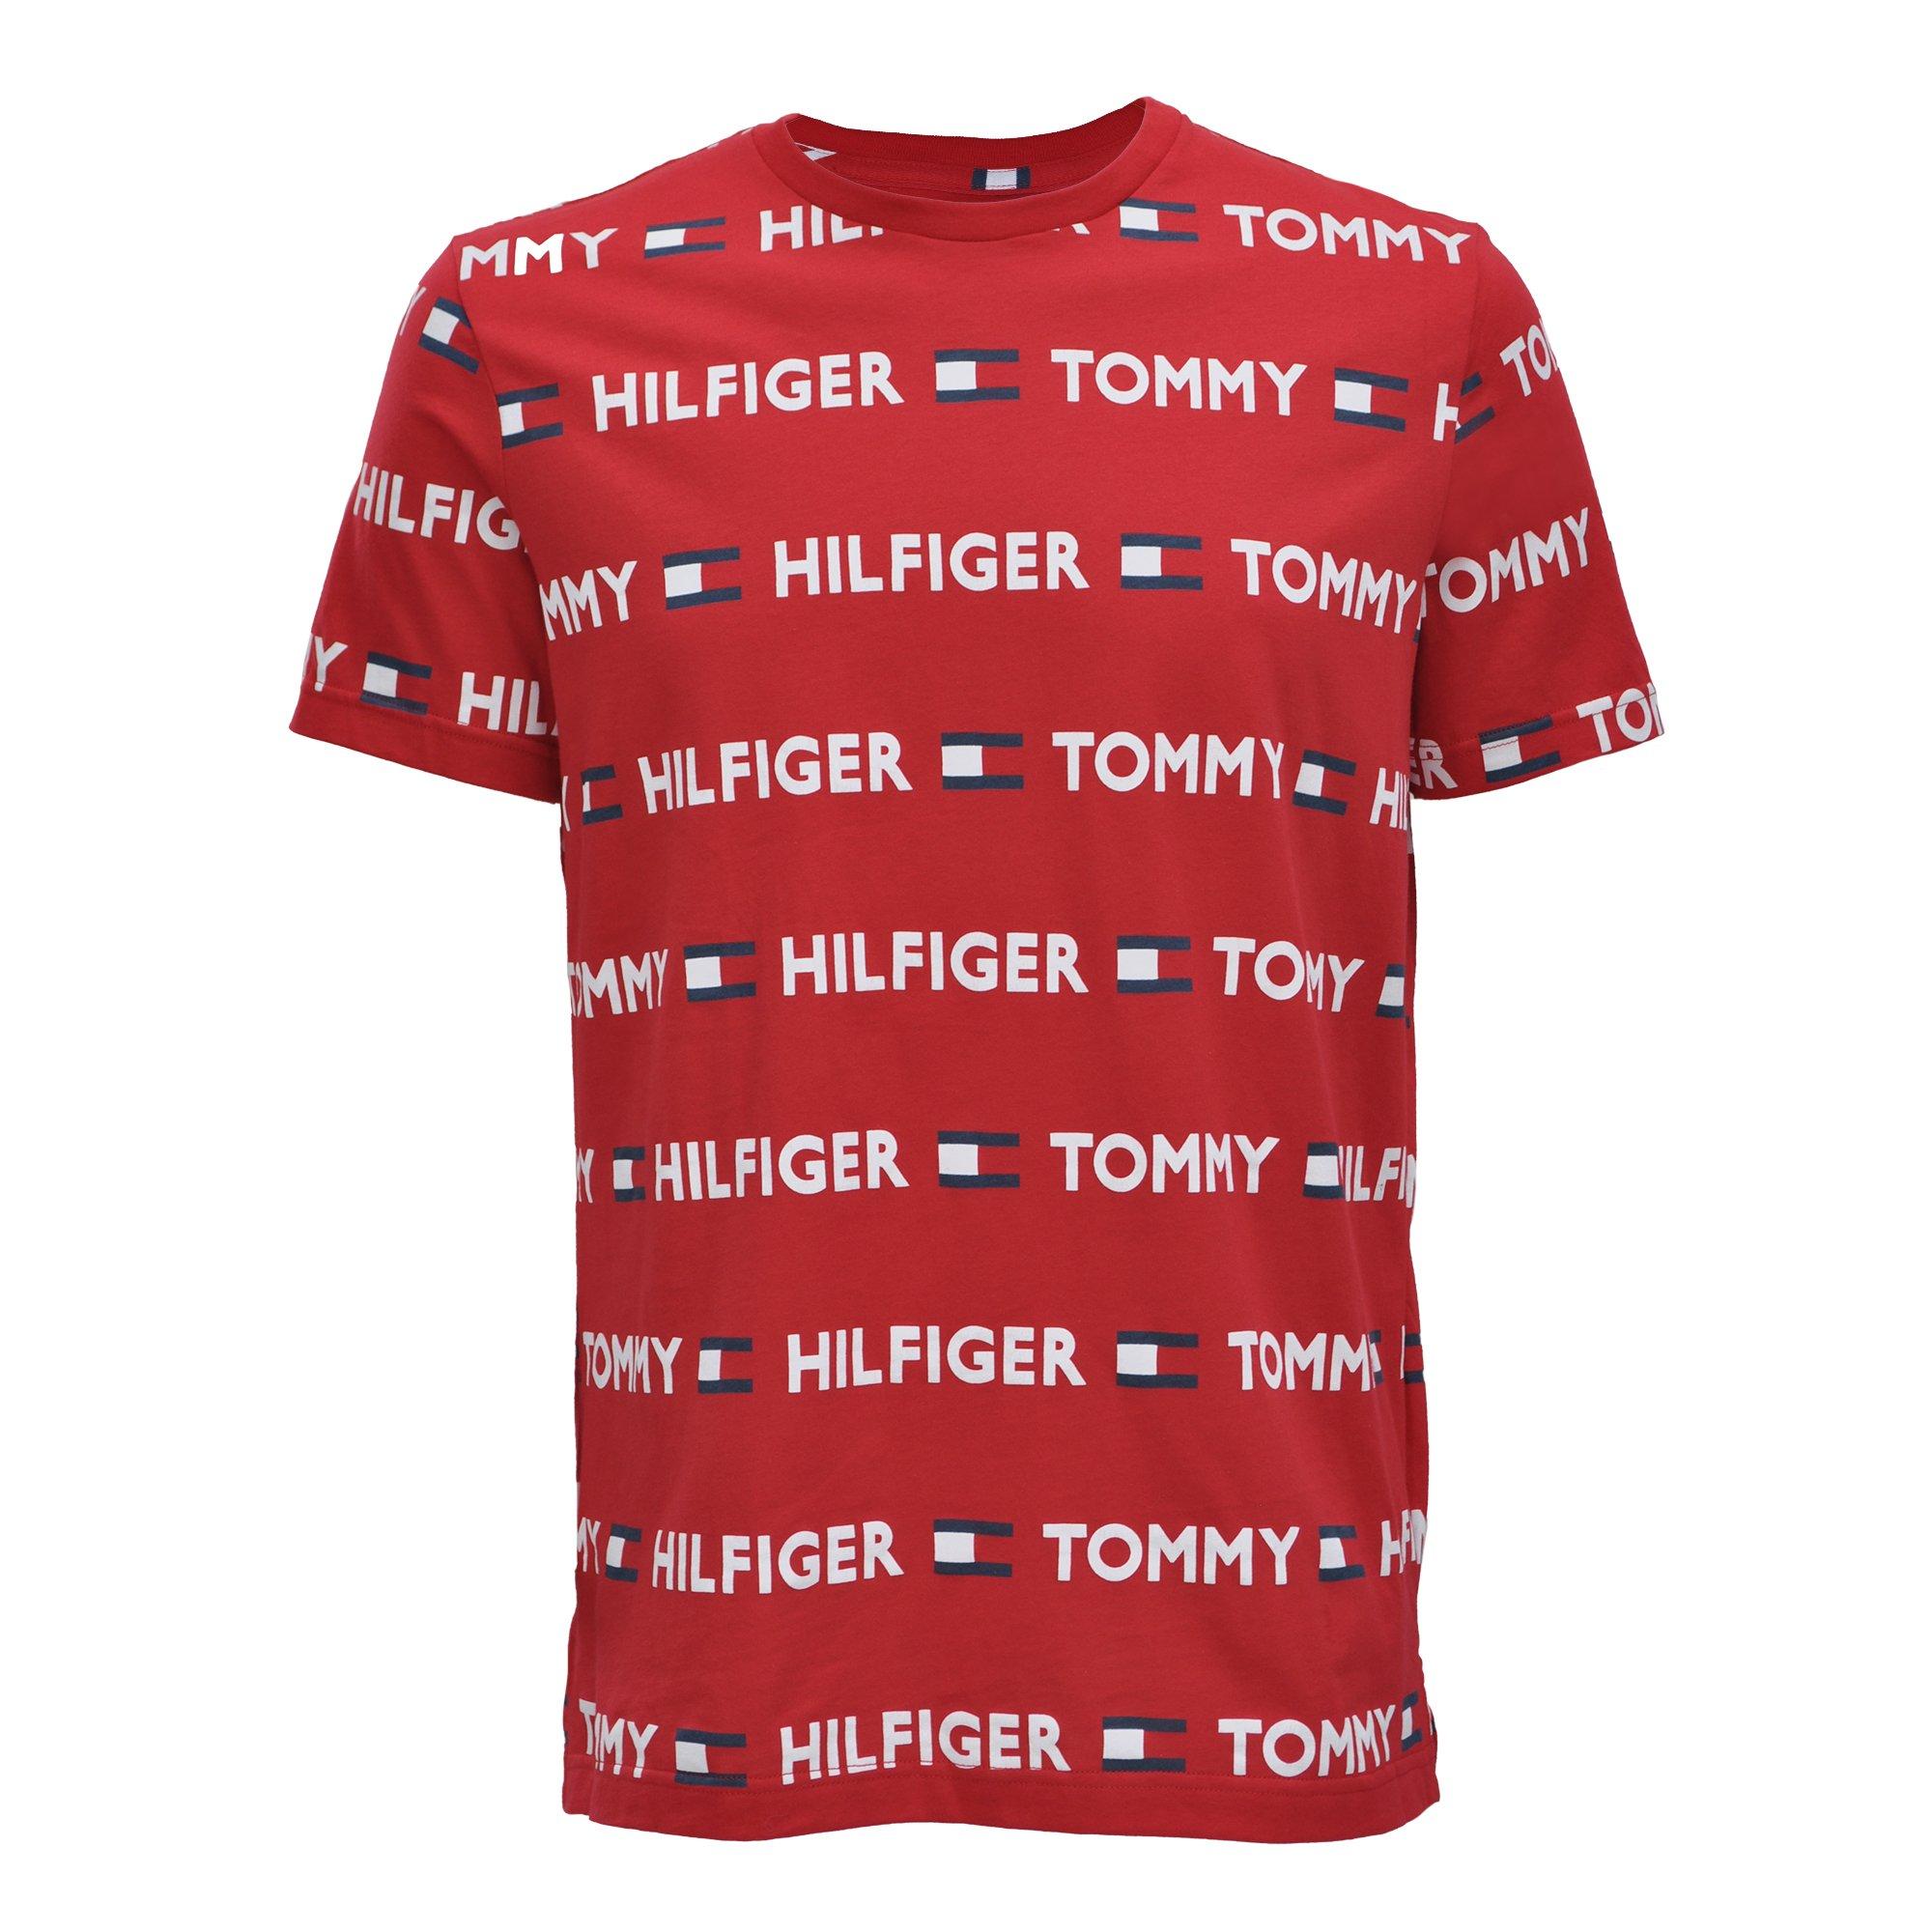 Admin udluftning Indtil Tommy Hilfiger Men's All-Over-Print Logo "Red" Tee